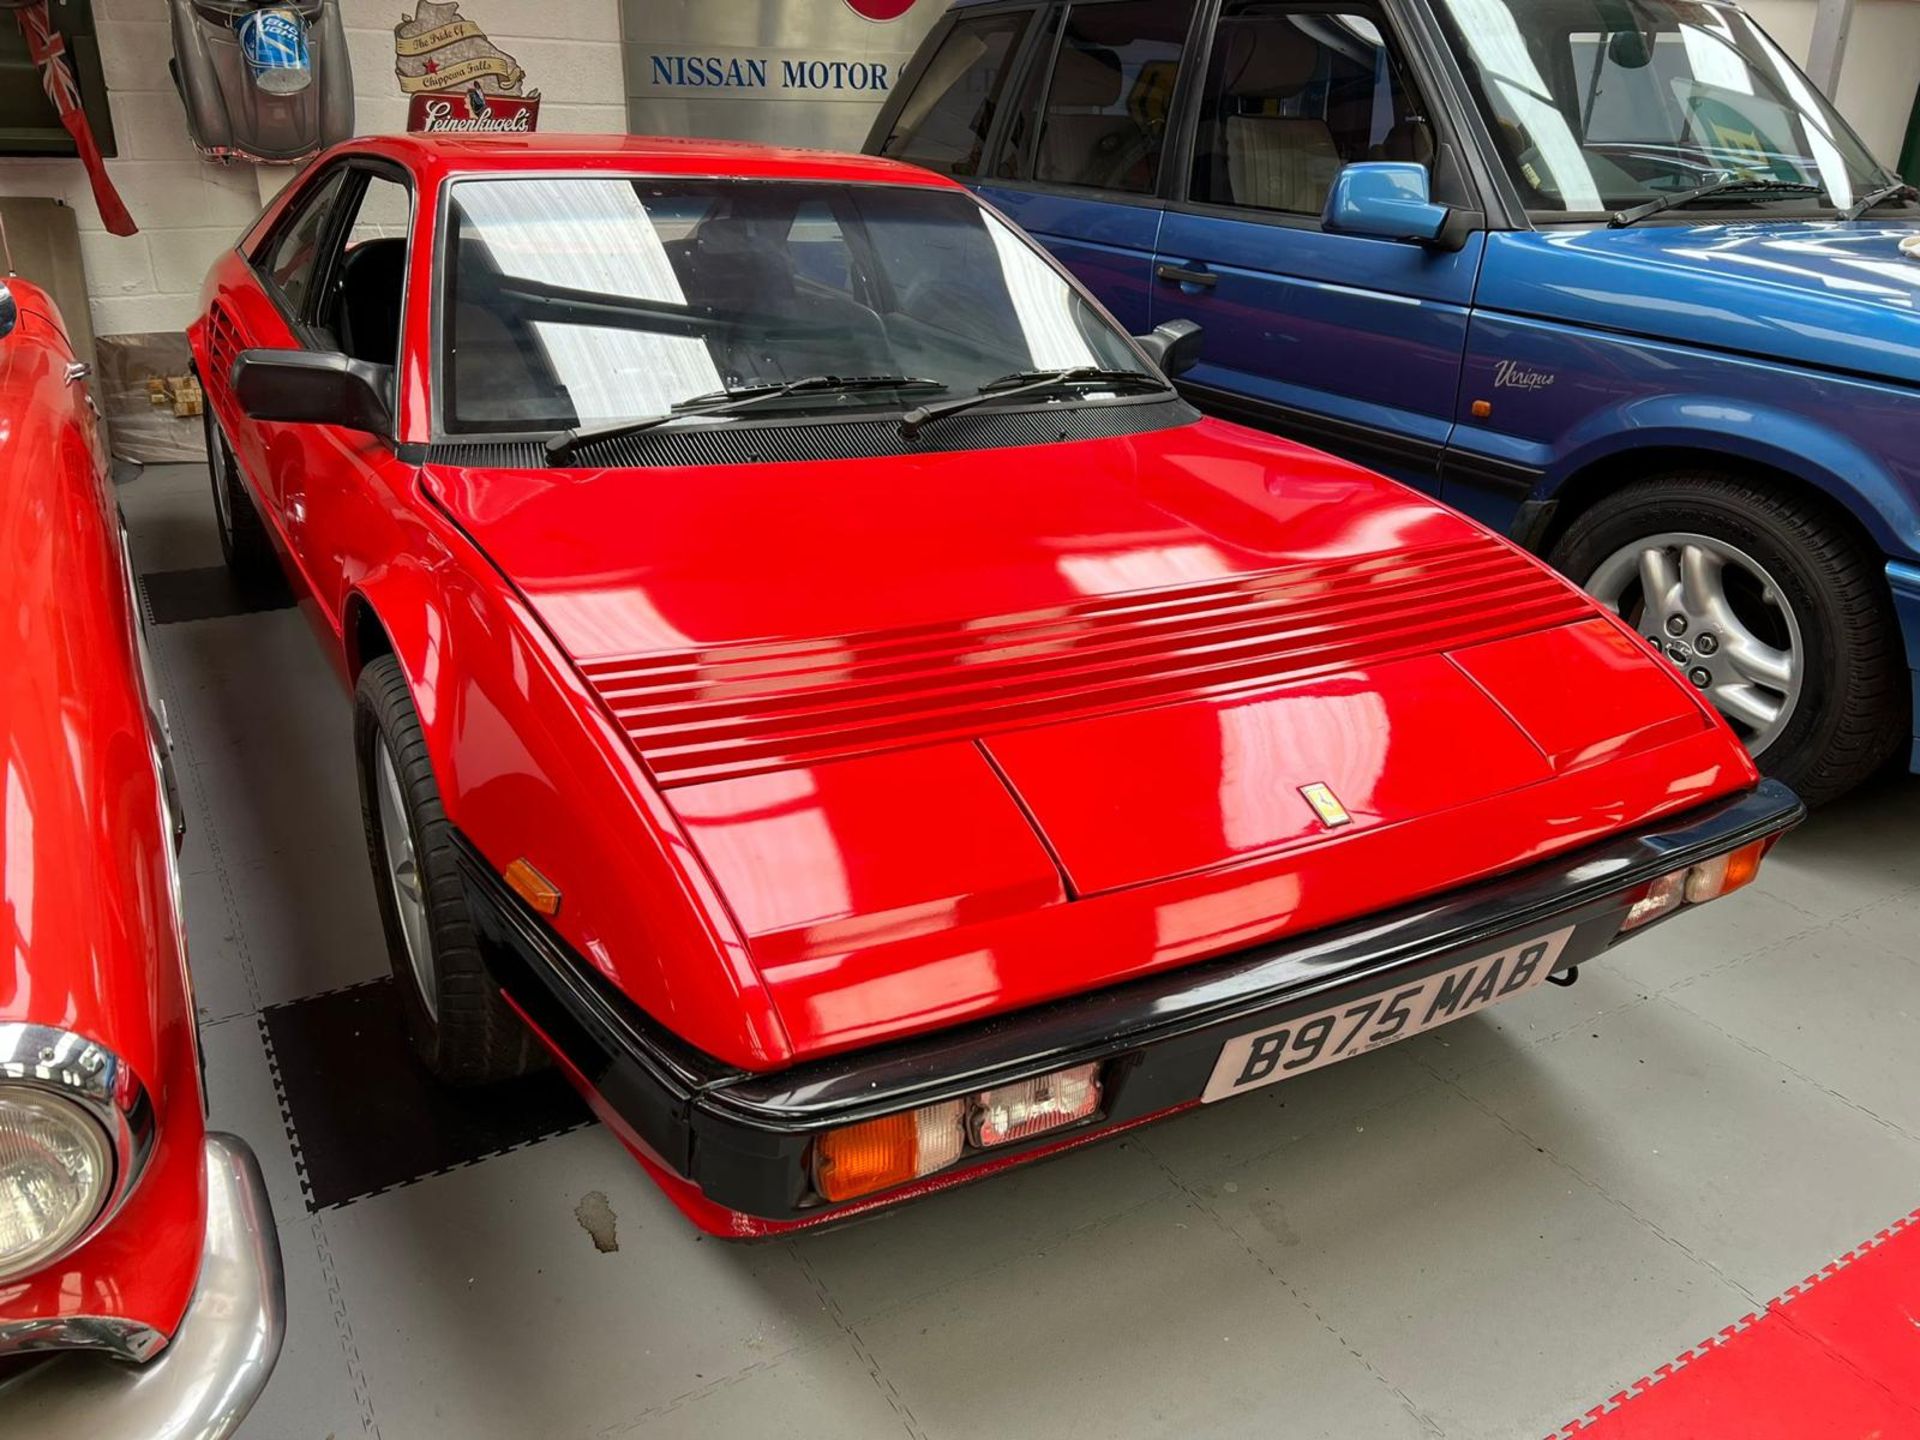 Ferrari Mondial Quattrovalvole Coupe 1984 - Image 6 of 30